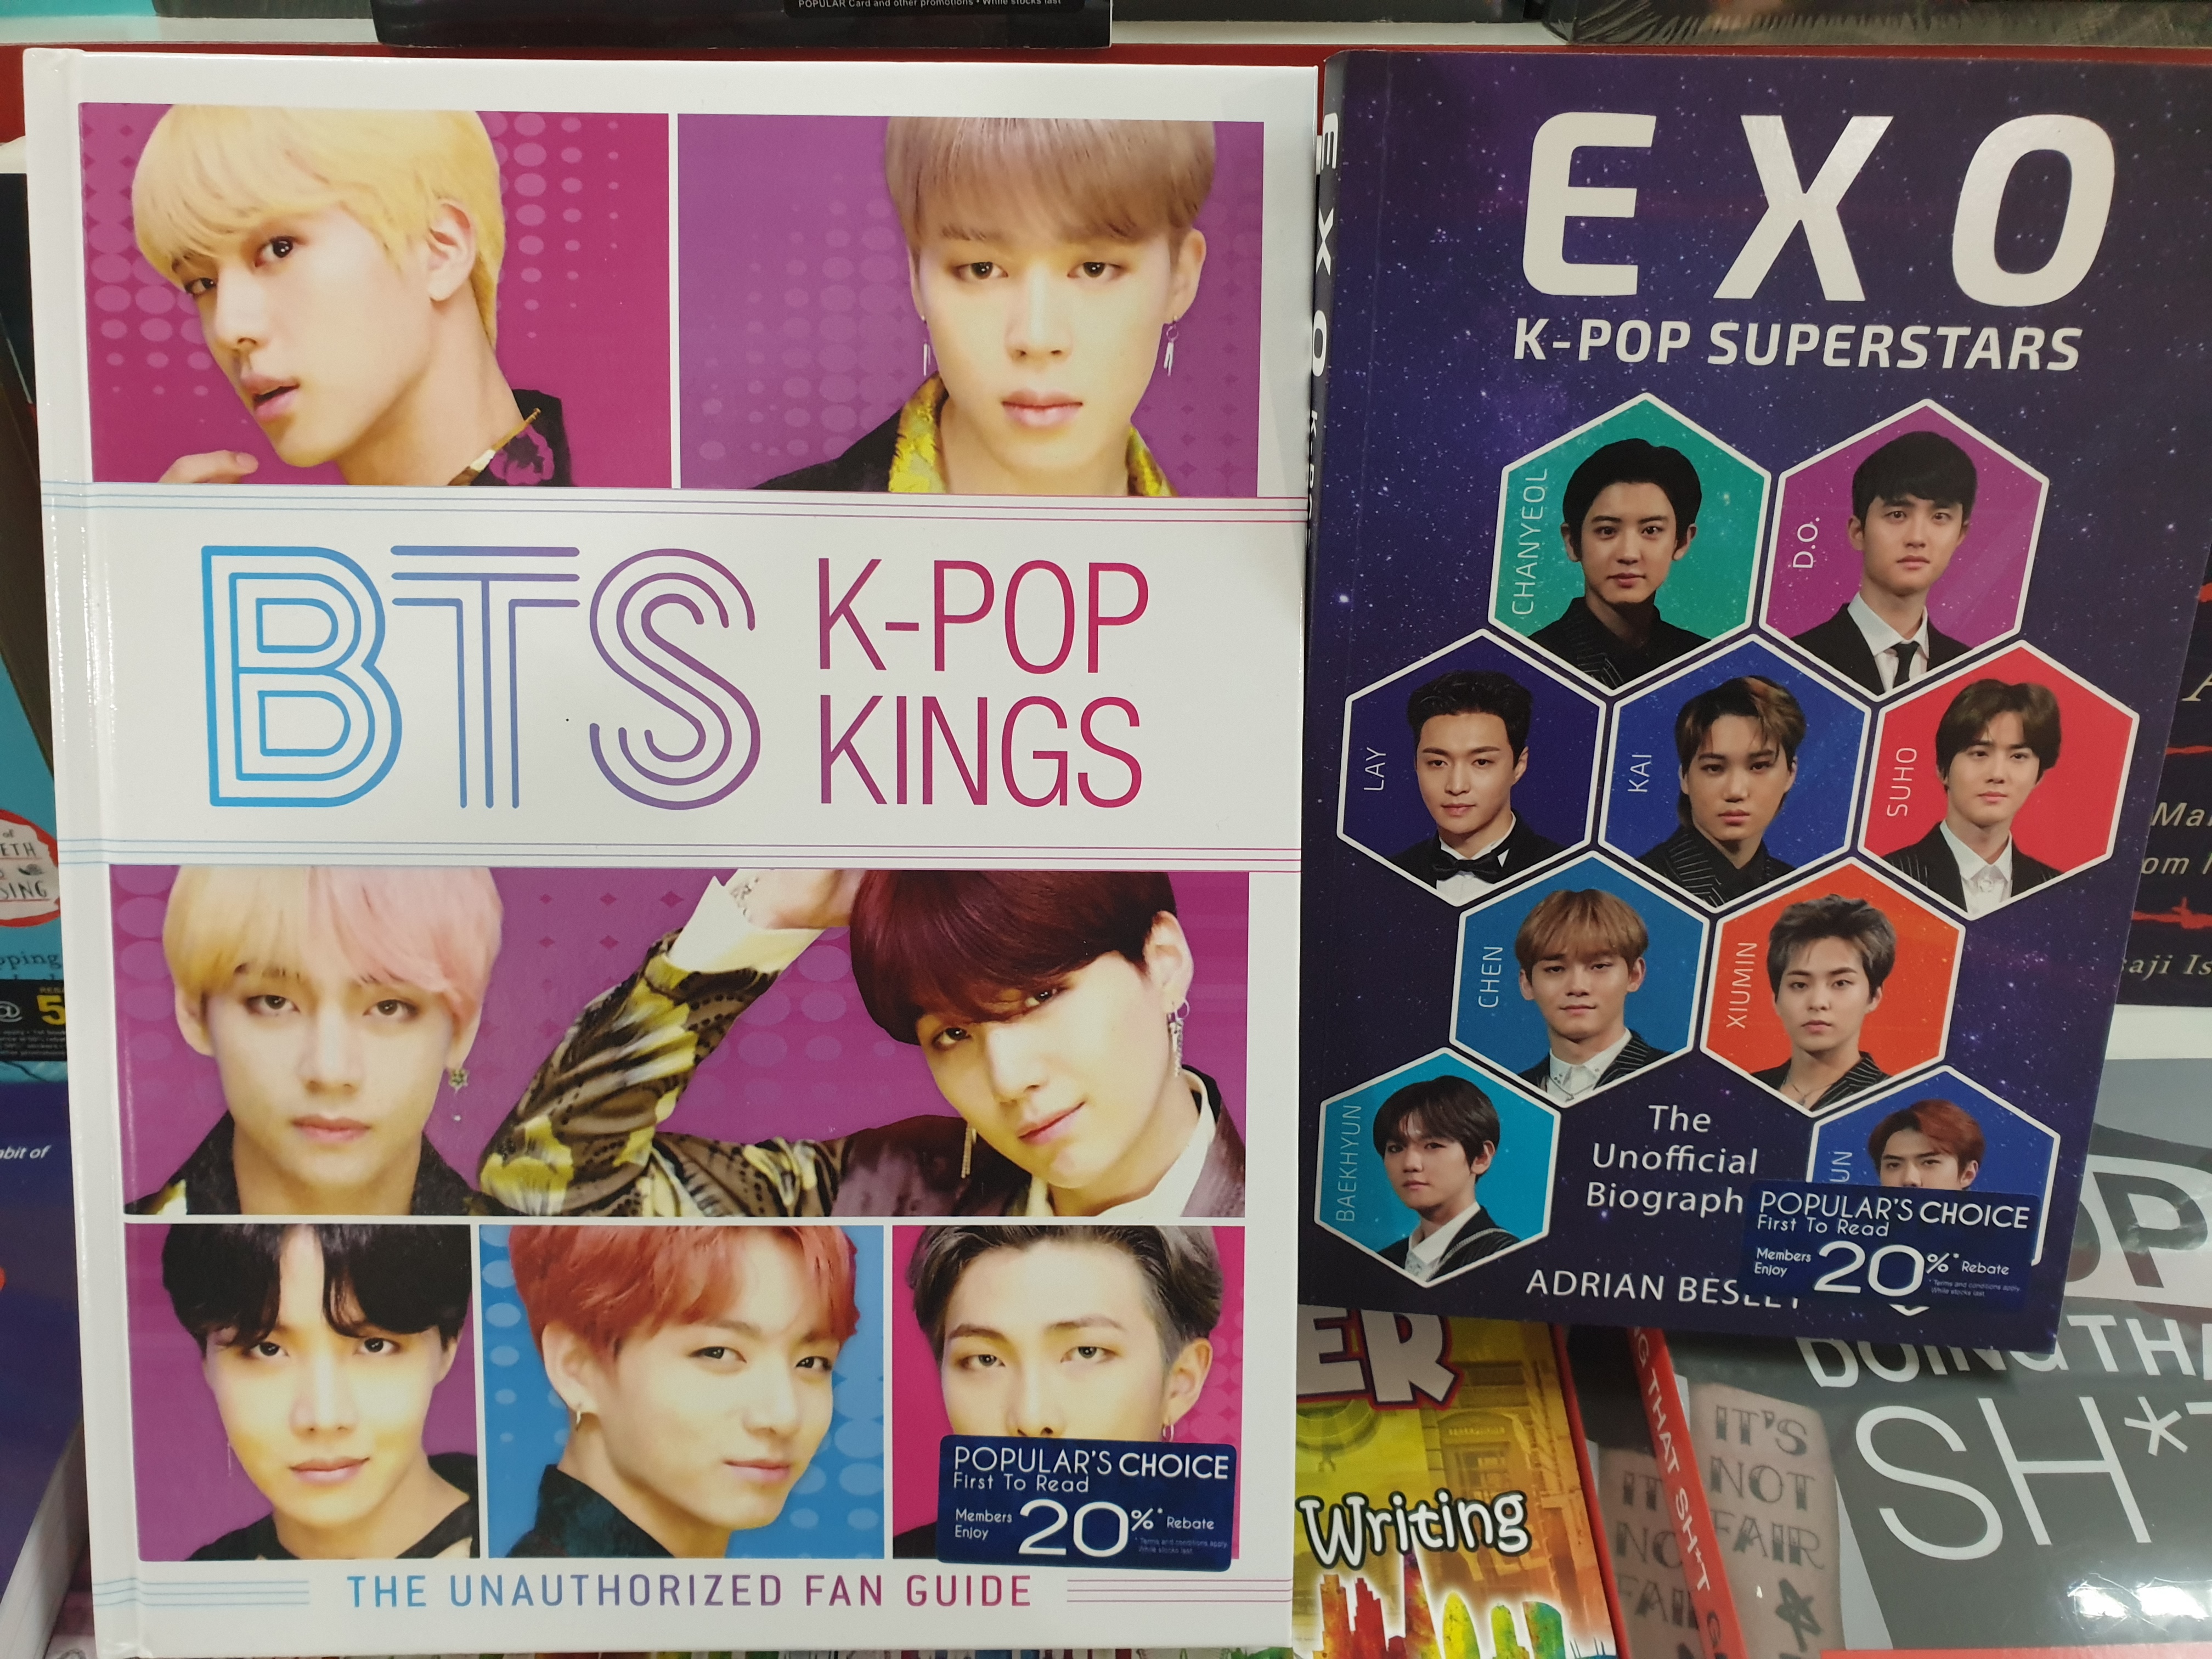 BTS: K-pop Kings: The Unauthorized Fan Guide